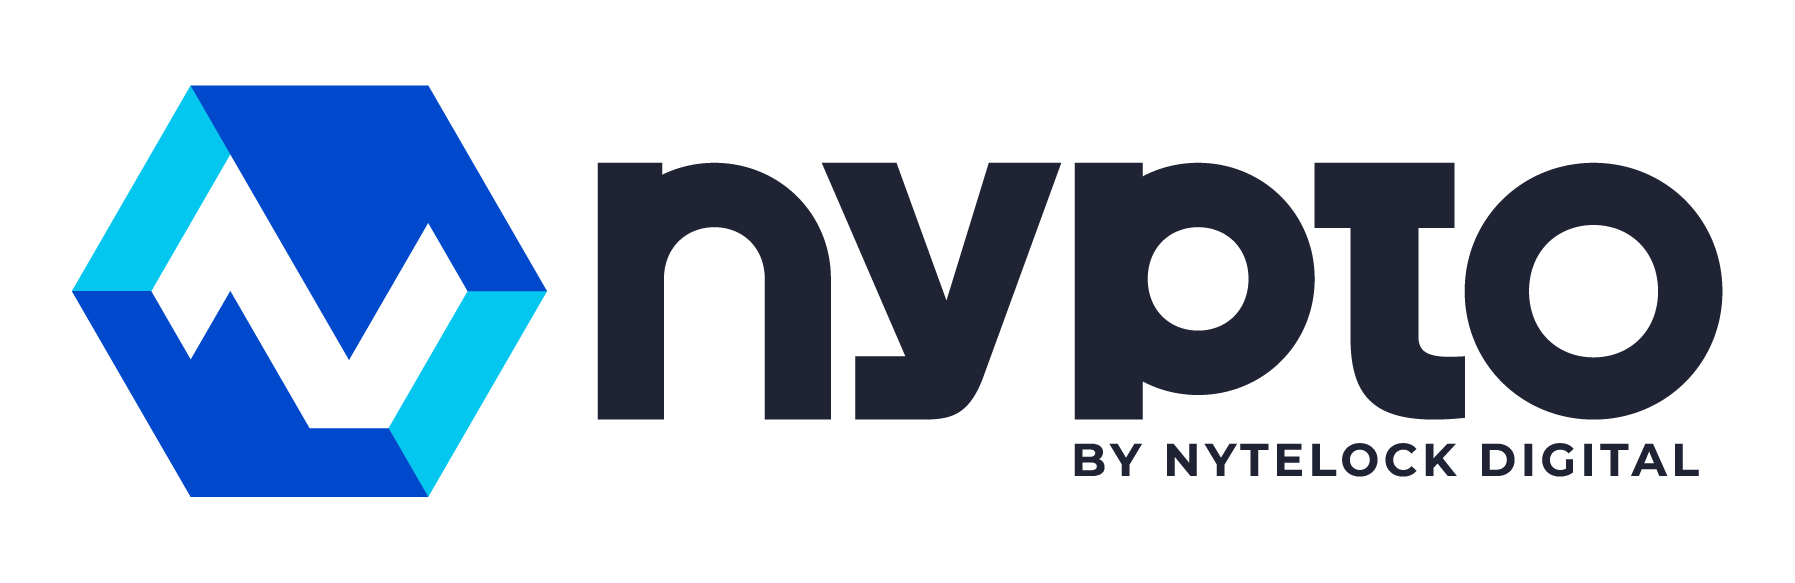 nypto logo by nytelock digital